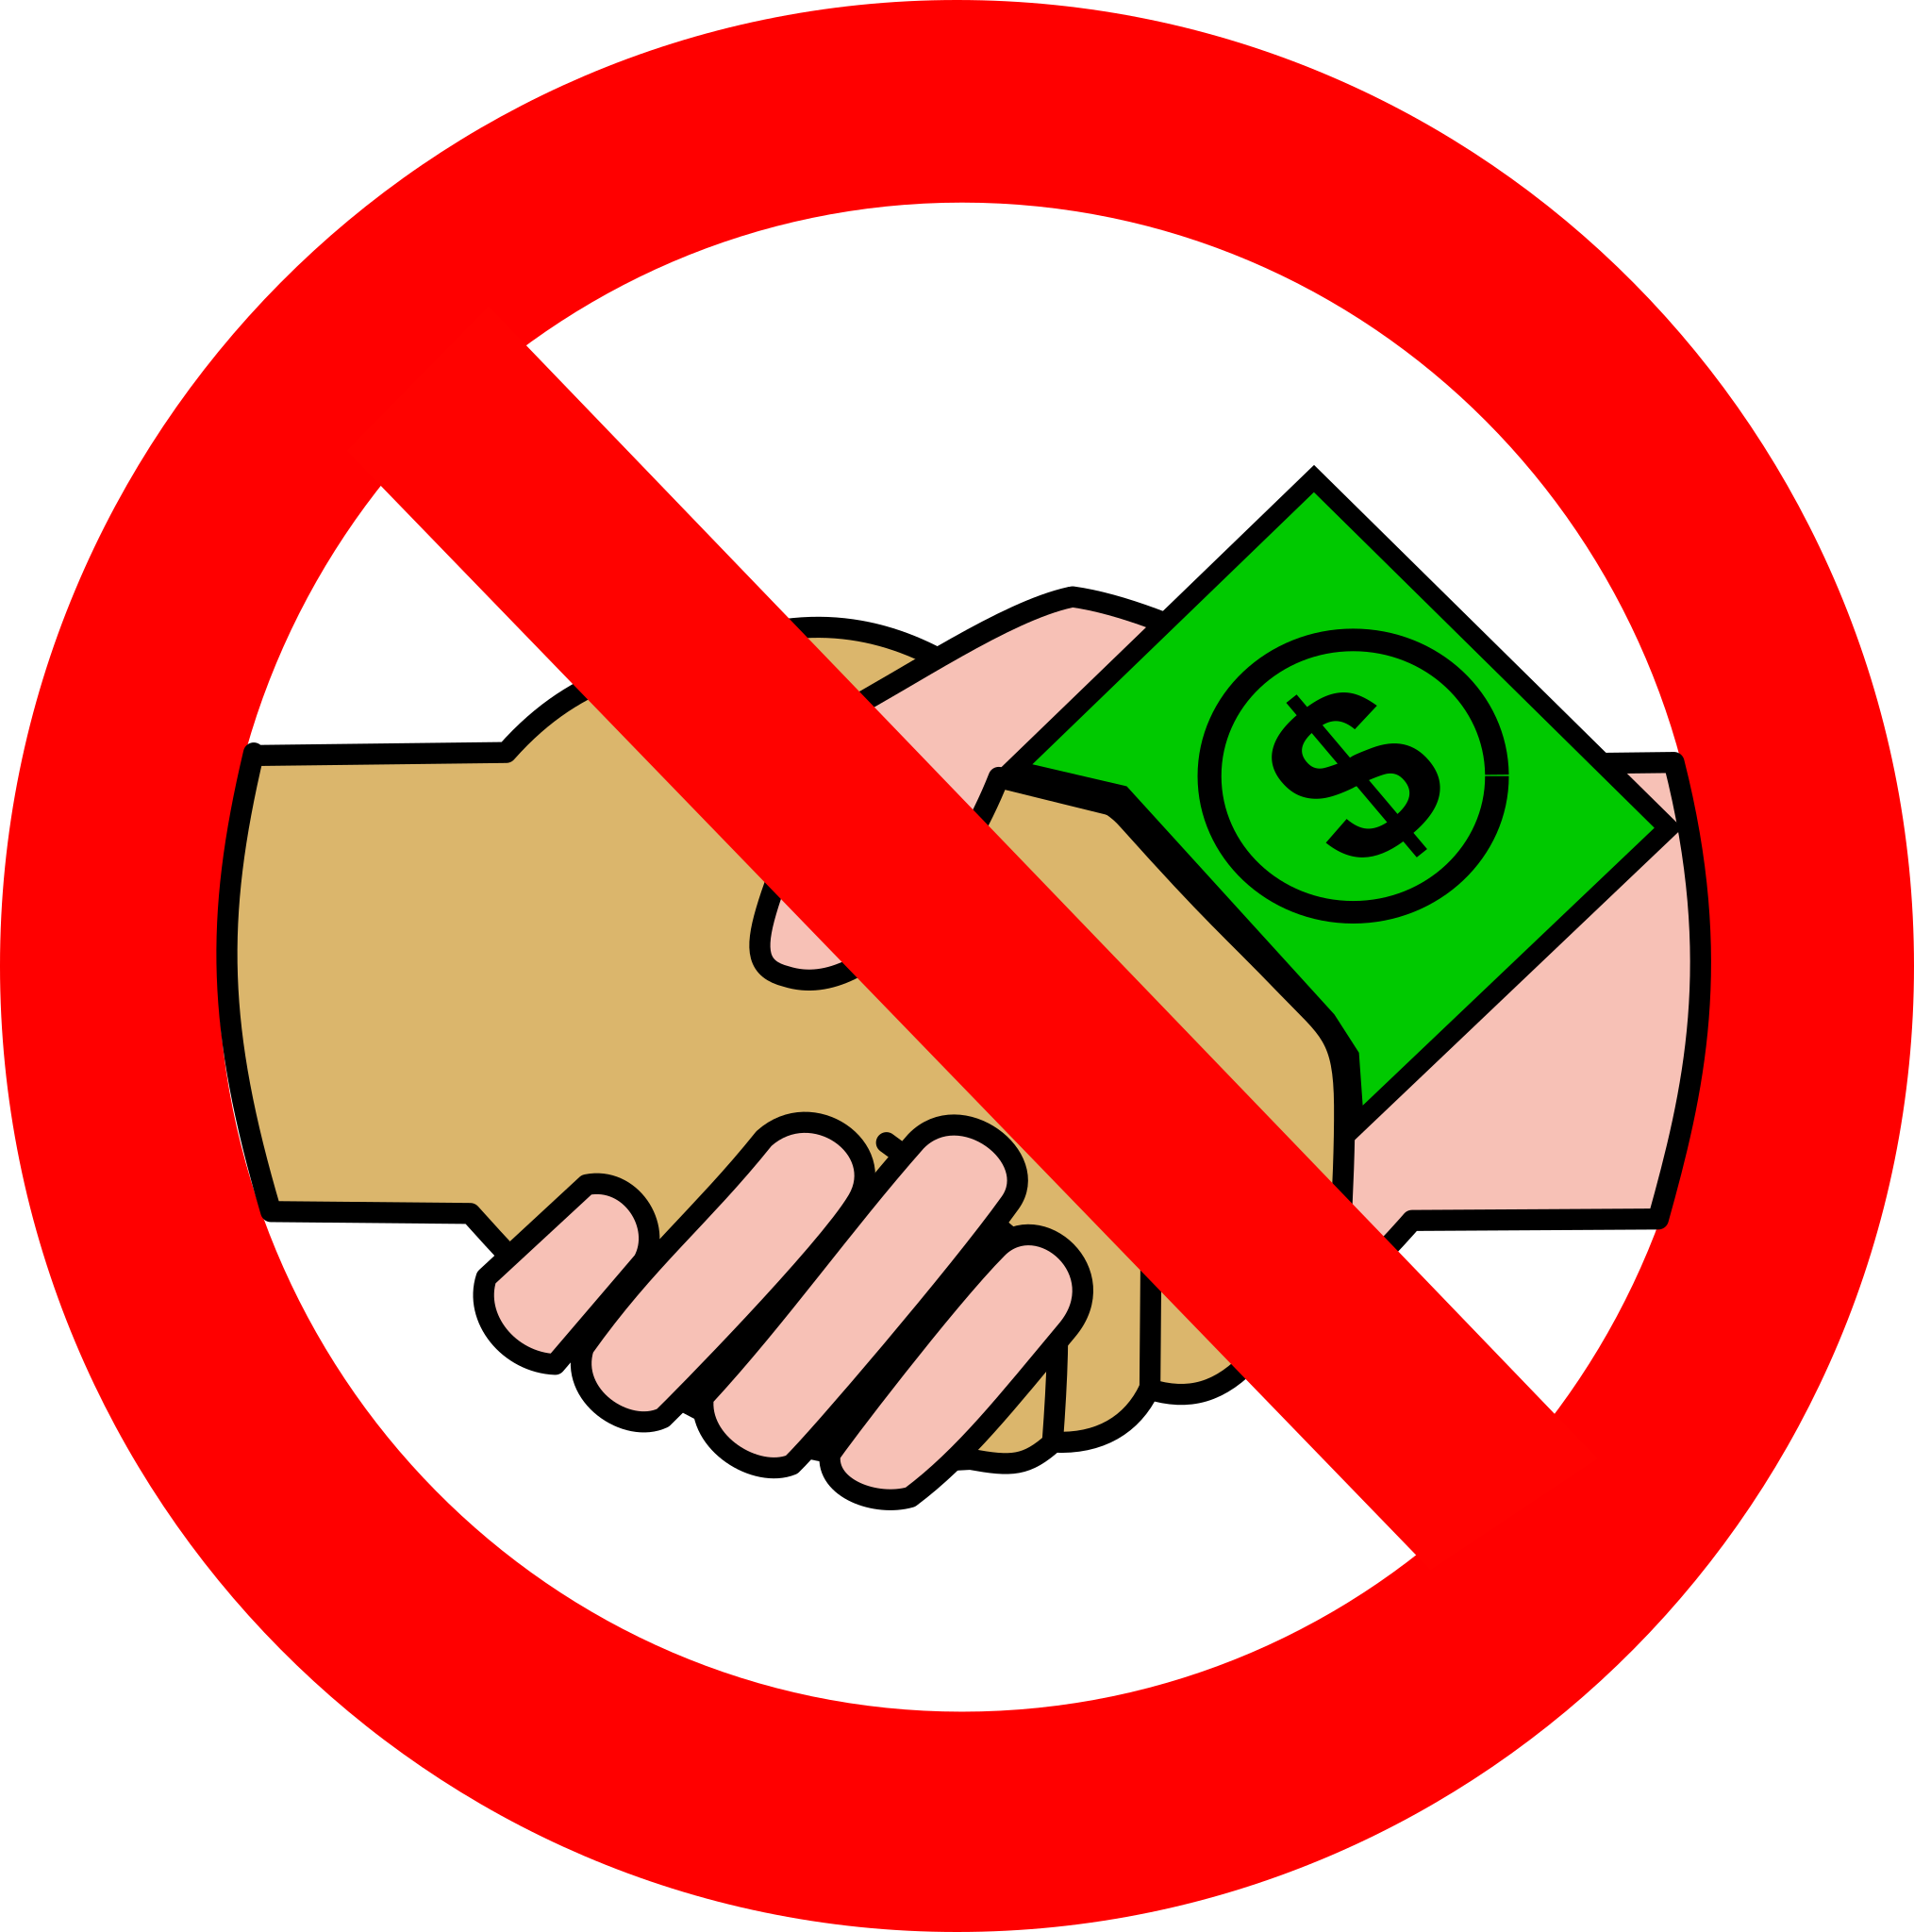 Handshake or handshake with money symbol